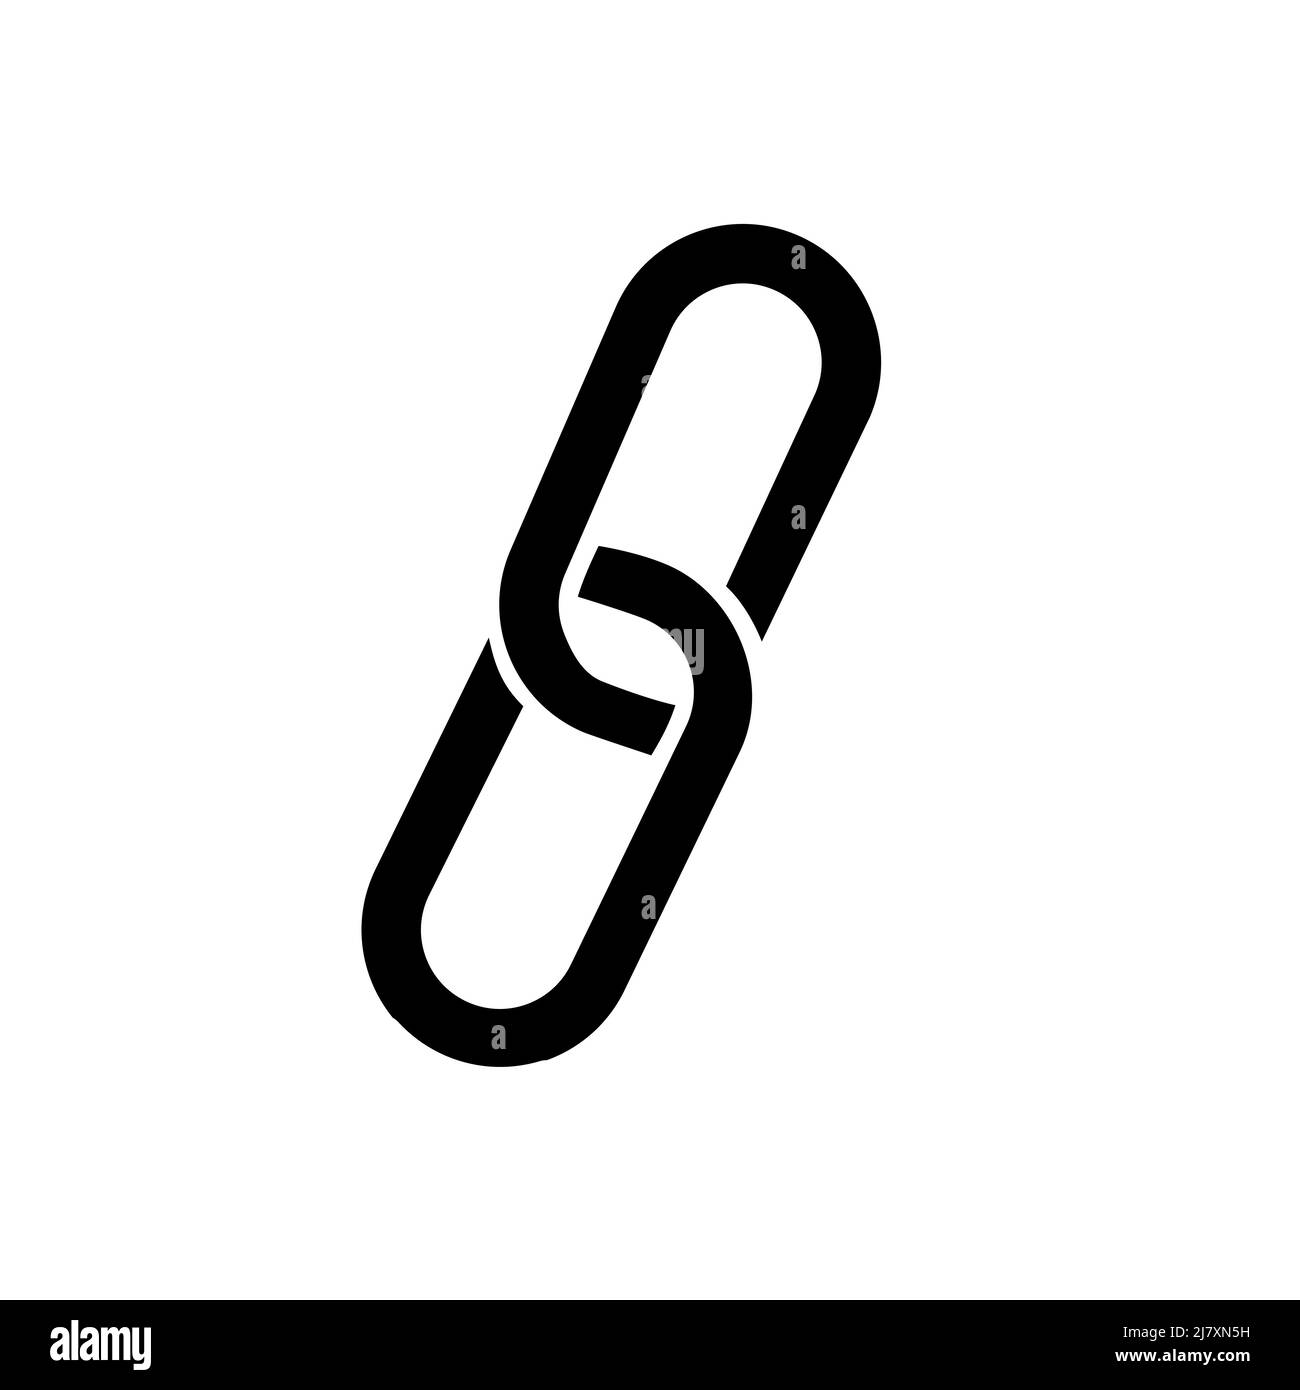 collegamento web, icona del collegamento ipertestuale in un'icona a forma di glifo nero pieno, isolata su sfondo bianco Illustrazione Vettoriale